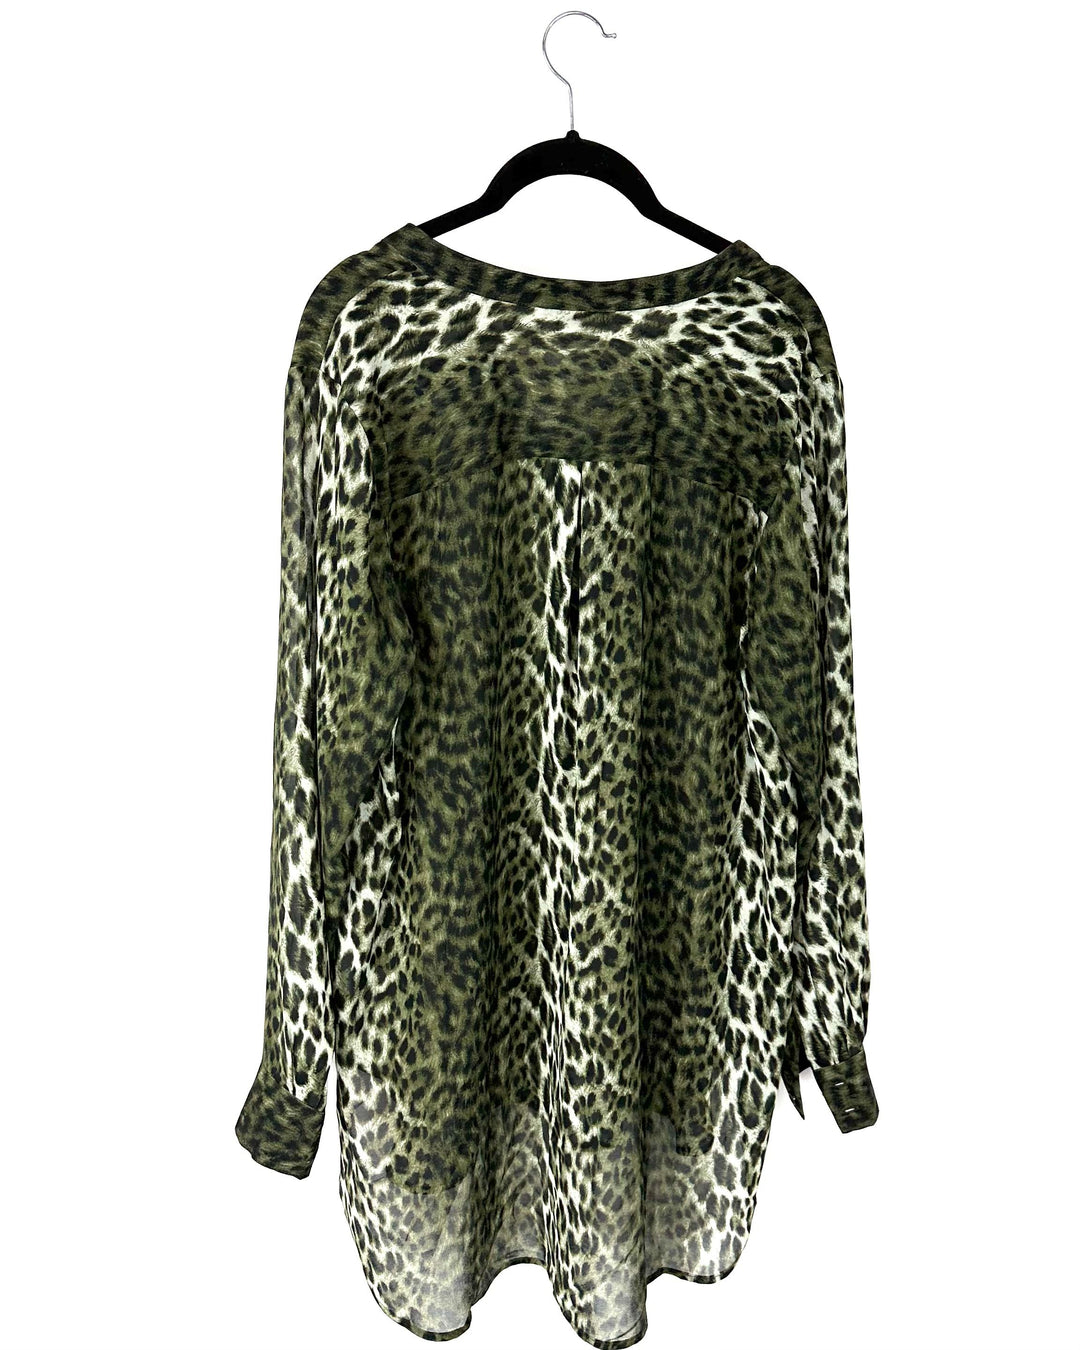 Green Leopard Print Flowy Blouse - Size 14-16